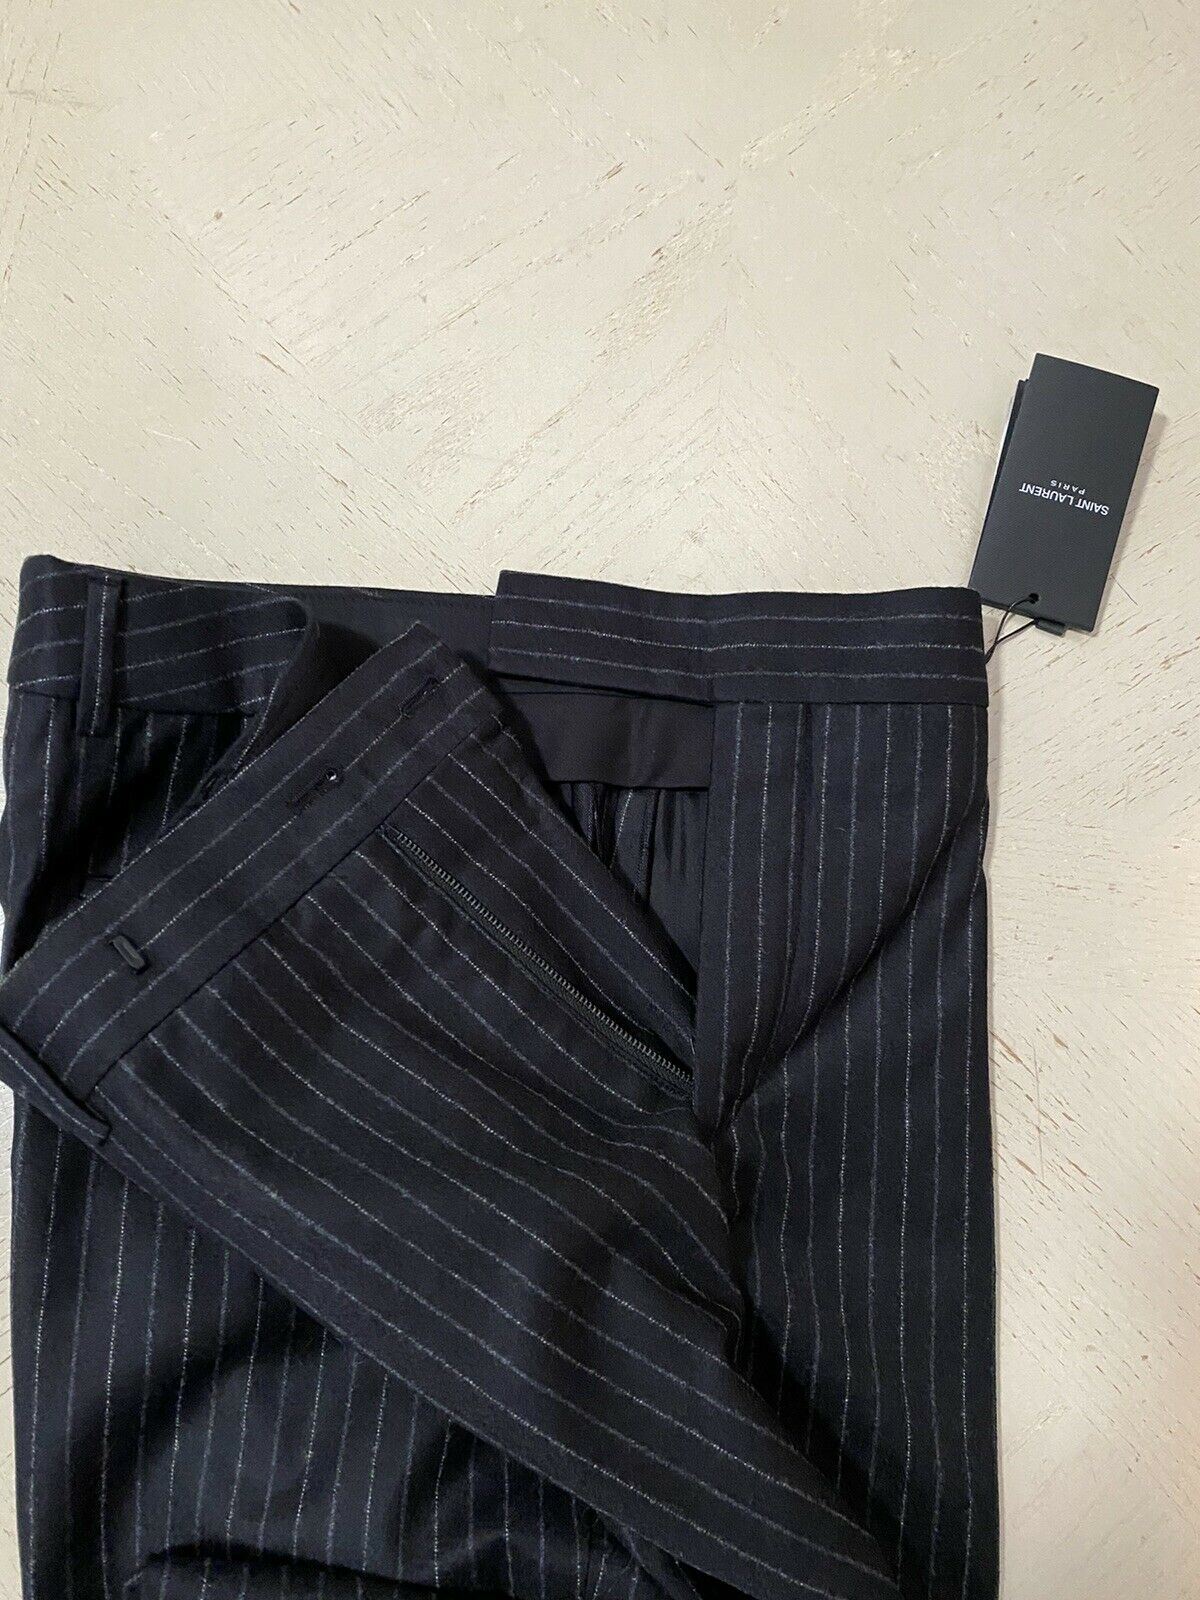 NWT $990 Saint Laurent Men’s Dress Pants Black 36 US ( 52 Eu ) Italy